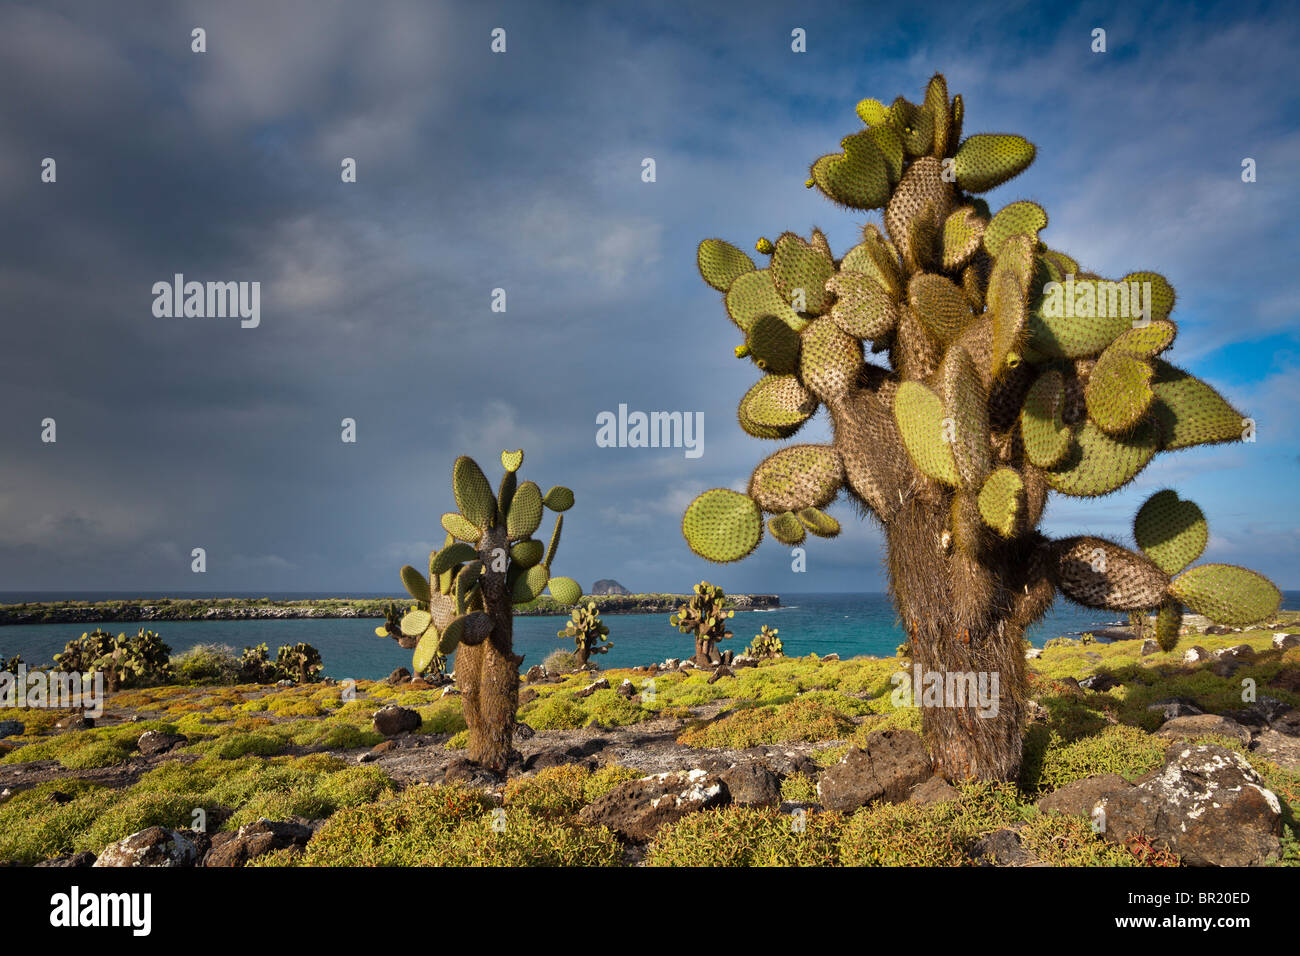 Prickly pear cactus, South Plaza Island, Galapagos Islands, Ecuador Stock Photo